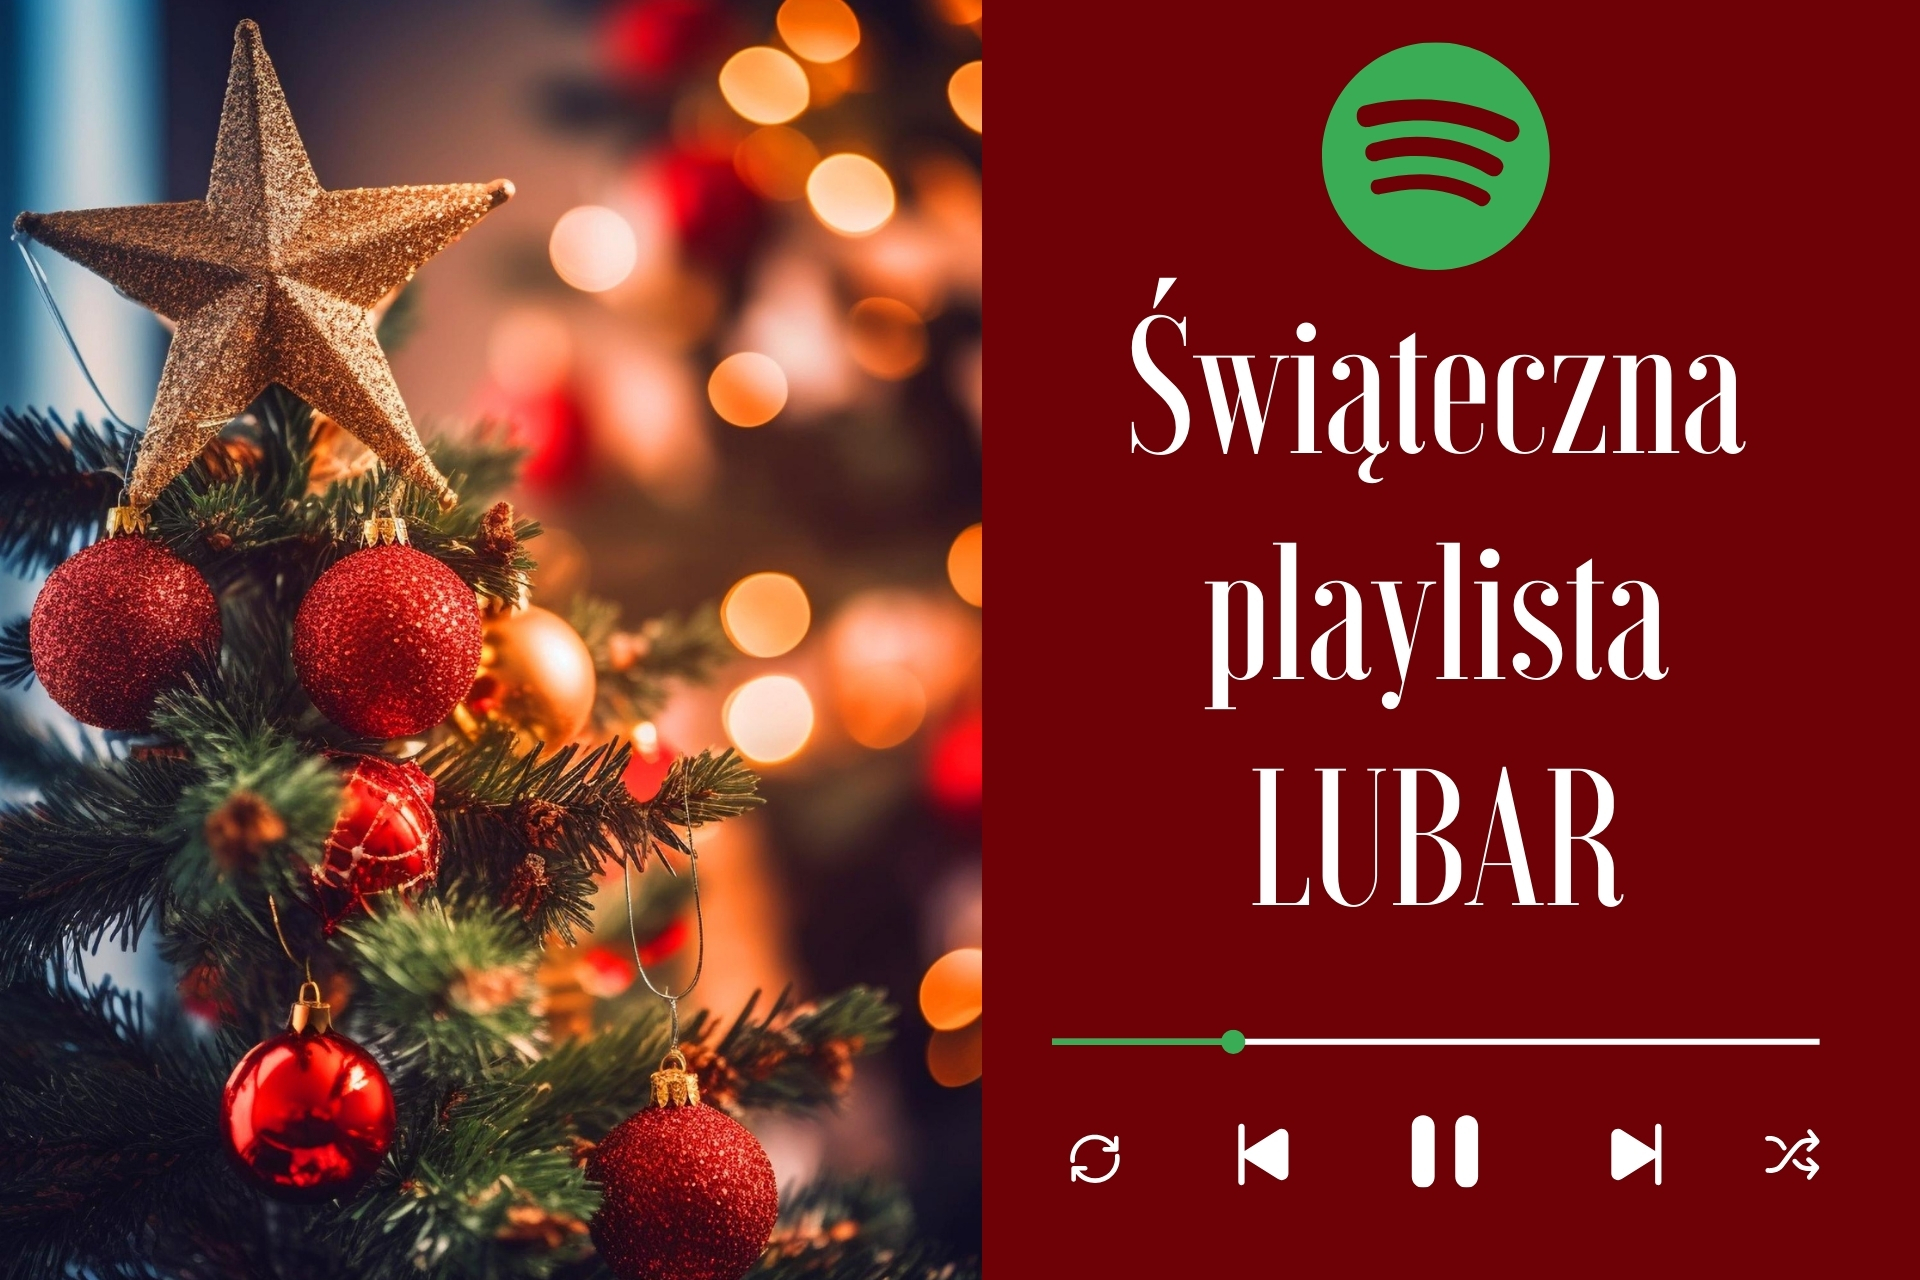 Świąteczne utwory - świąteczna playlista Lubar na Spotify